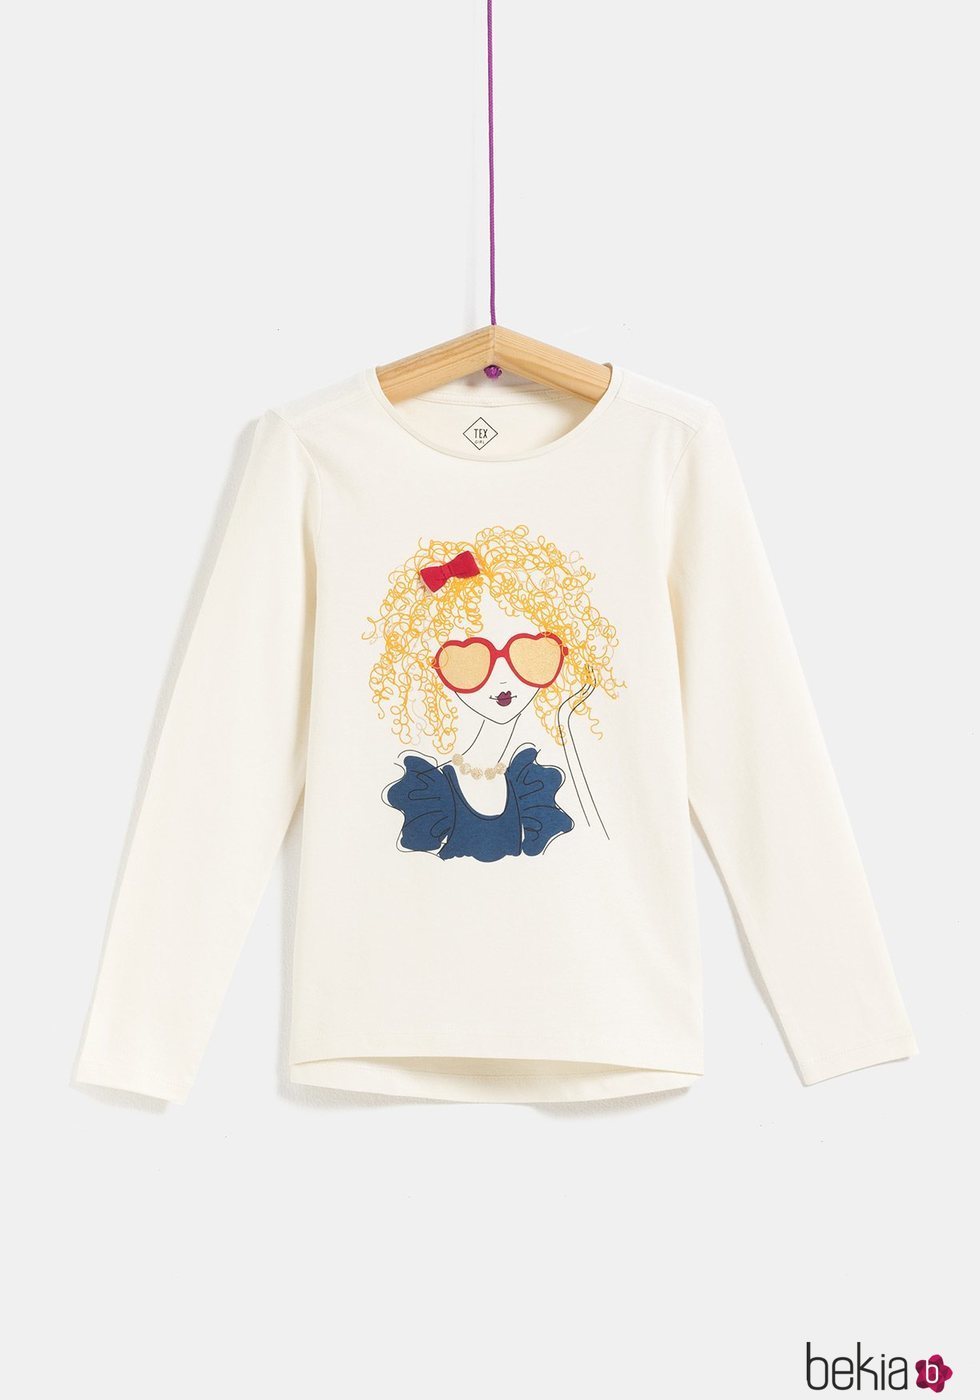 Camiseta blanca con dibujo de chica para niña de la colección 'I-O' de Carrefour y TEX para otoño/invierno 2019